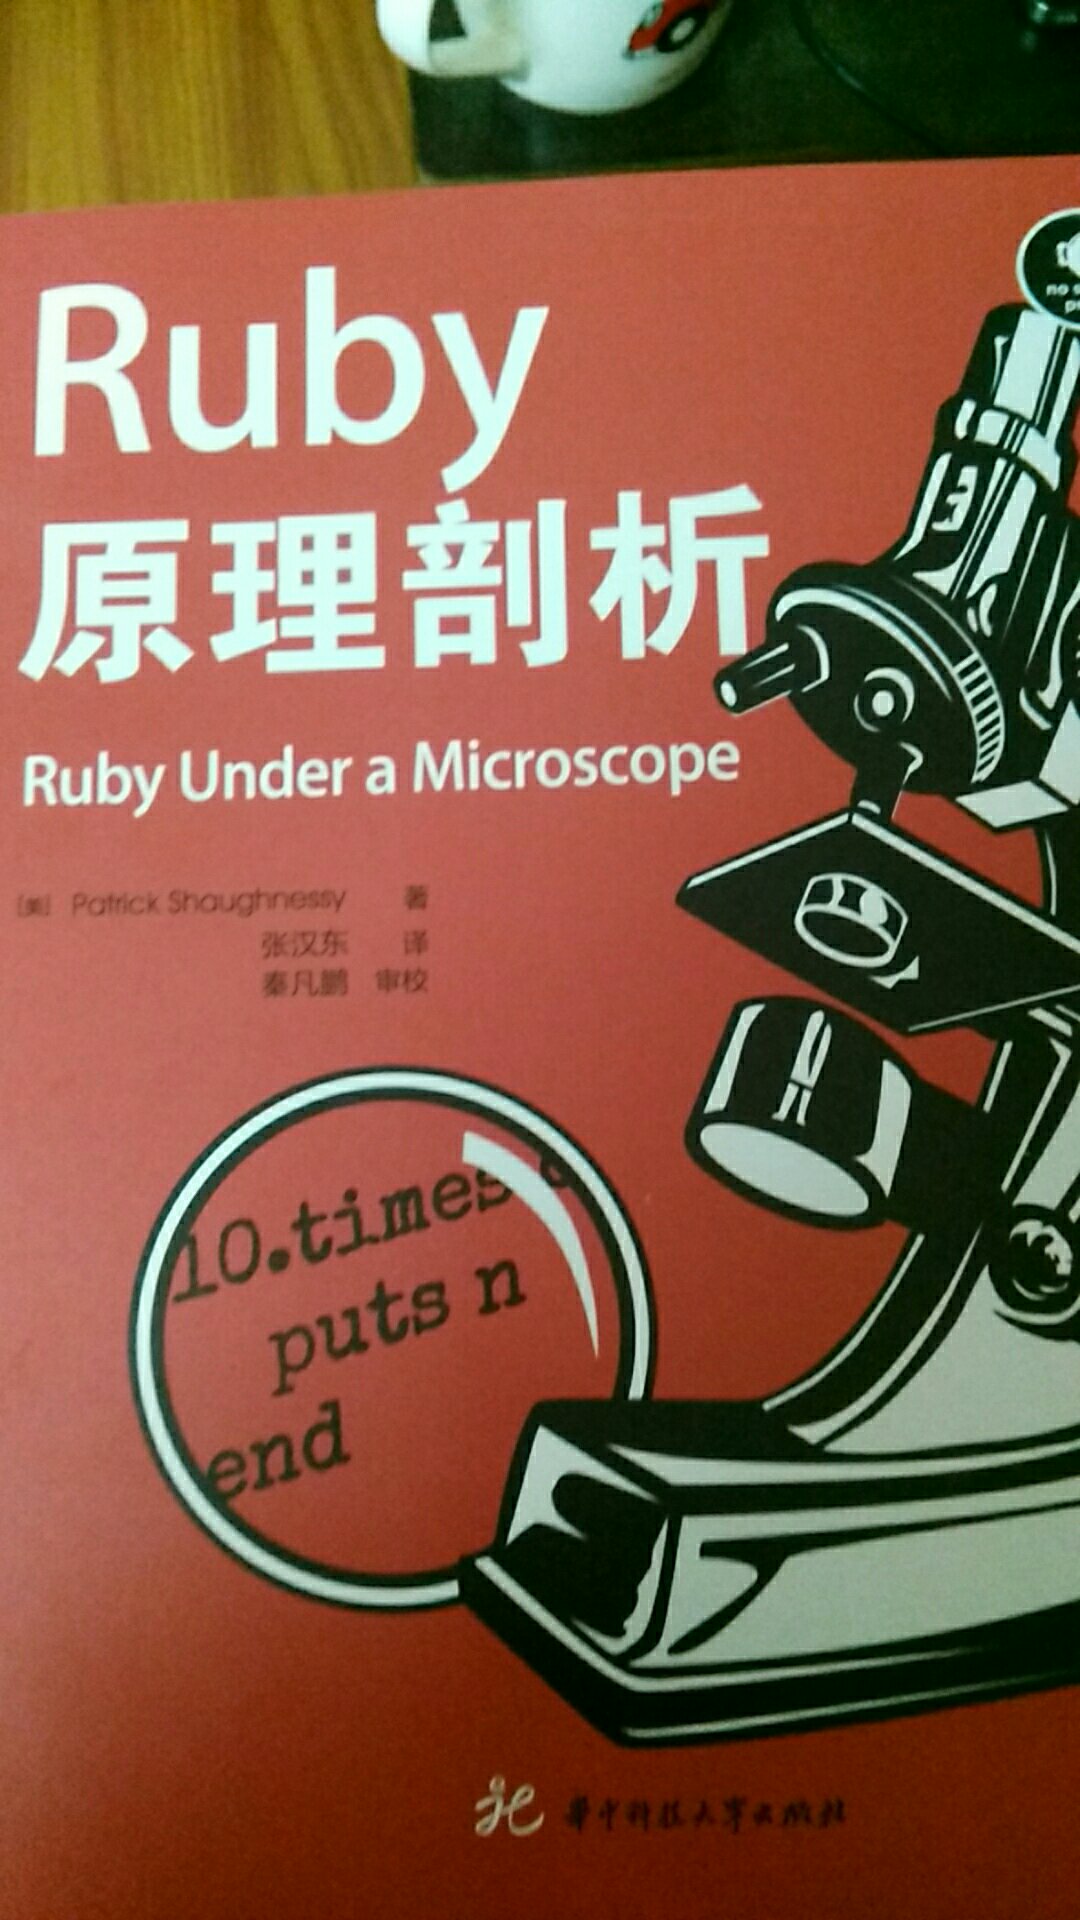 华中科技大学出版社的ruby教程三部曲之一！